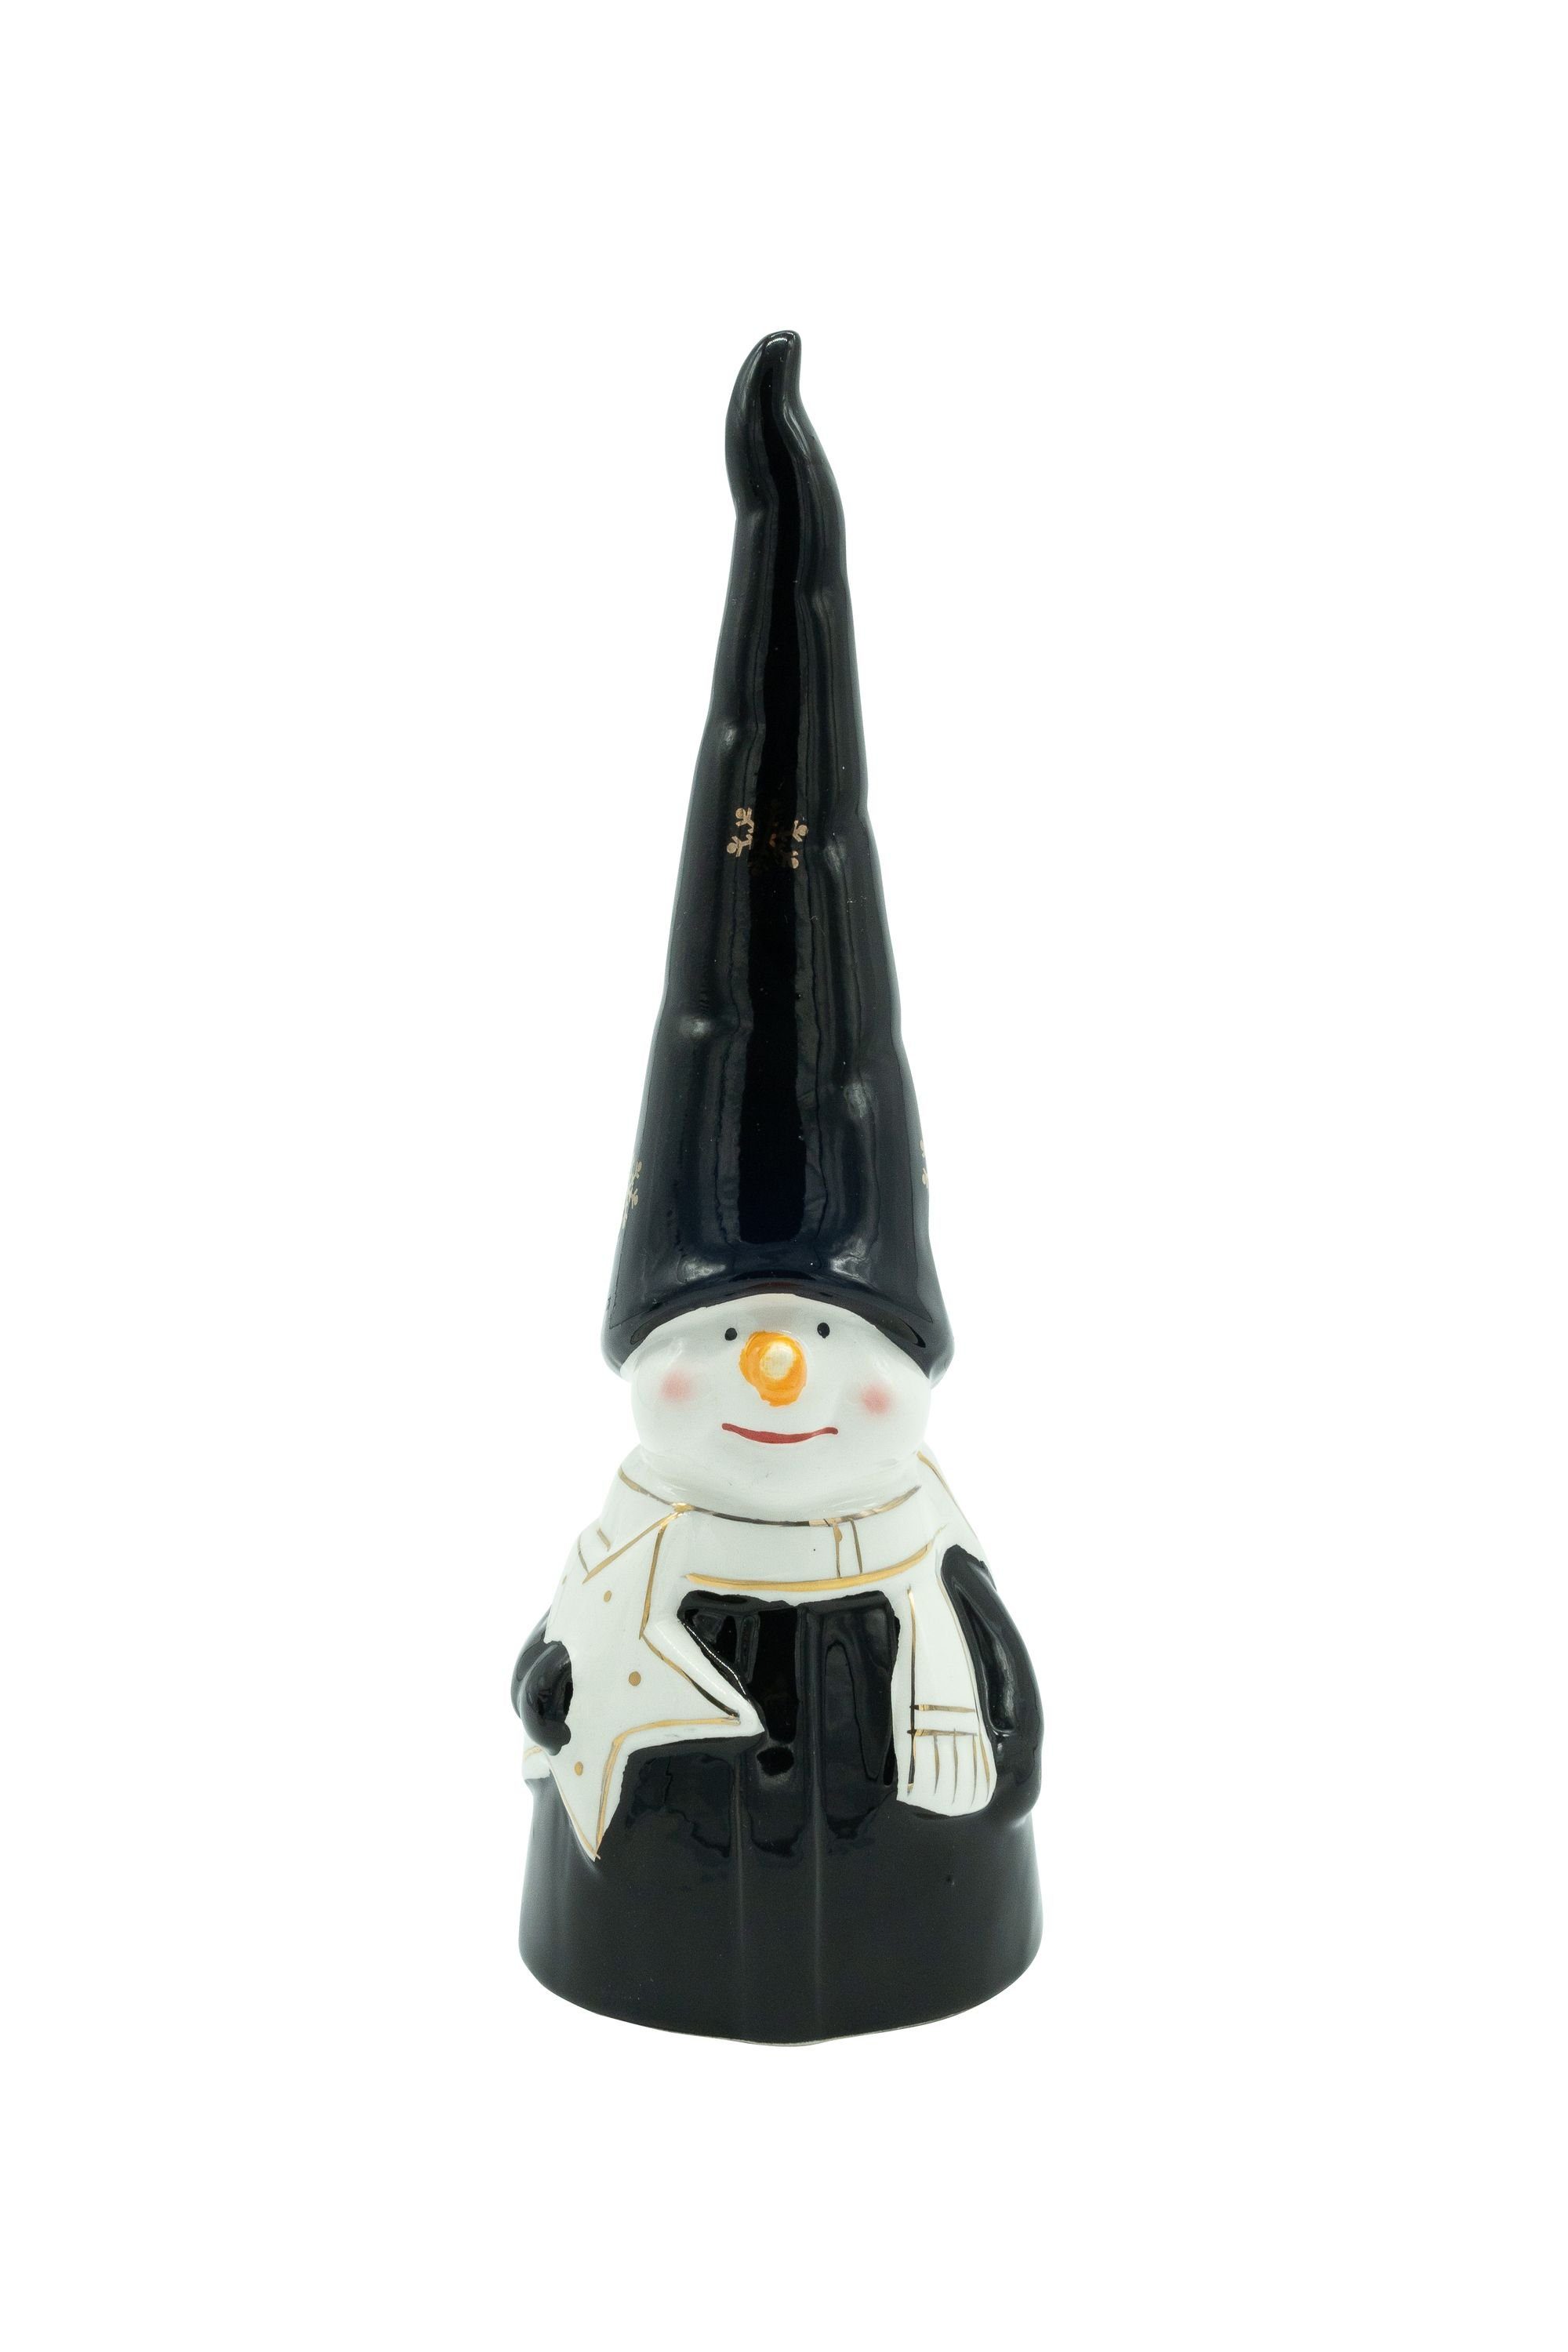 Heitmann DECO Weihnachtsfigur Schneemann, aus Keramik, 2x schwarz/weiß